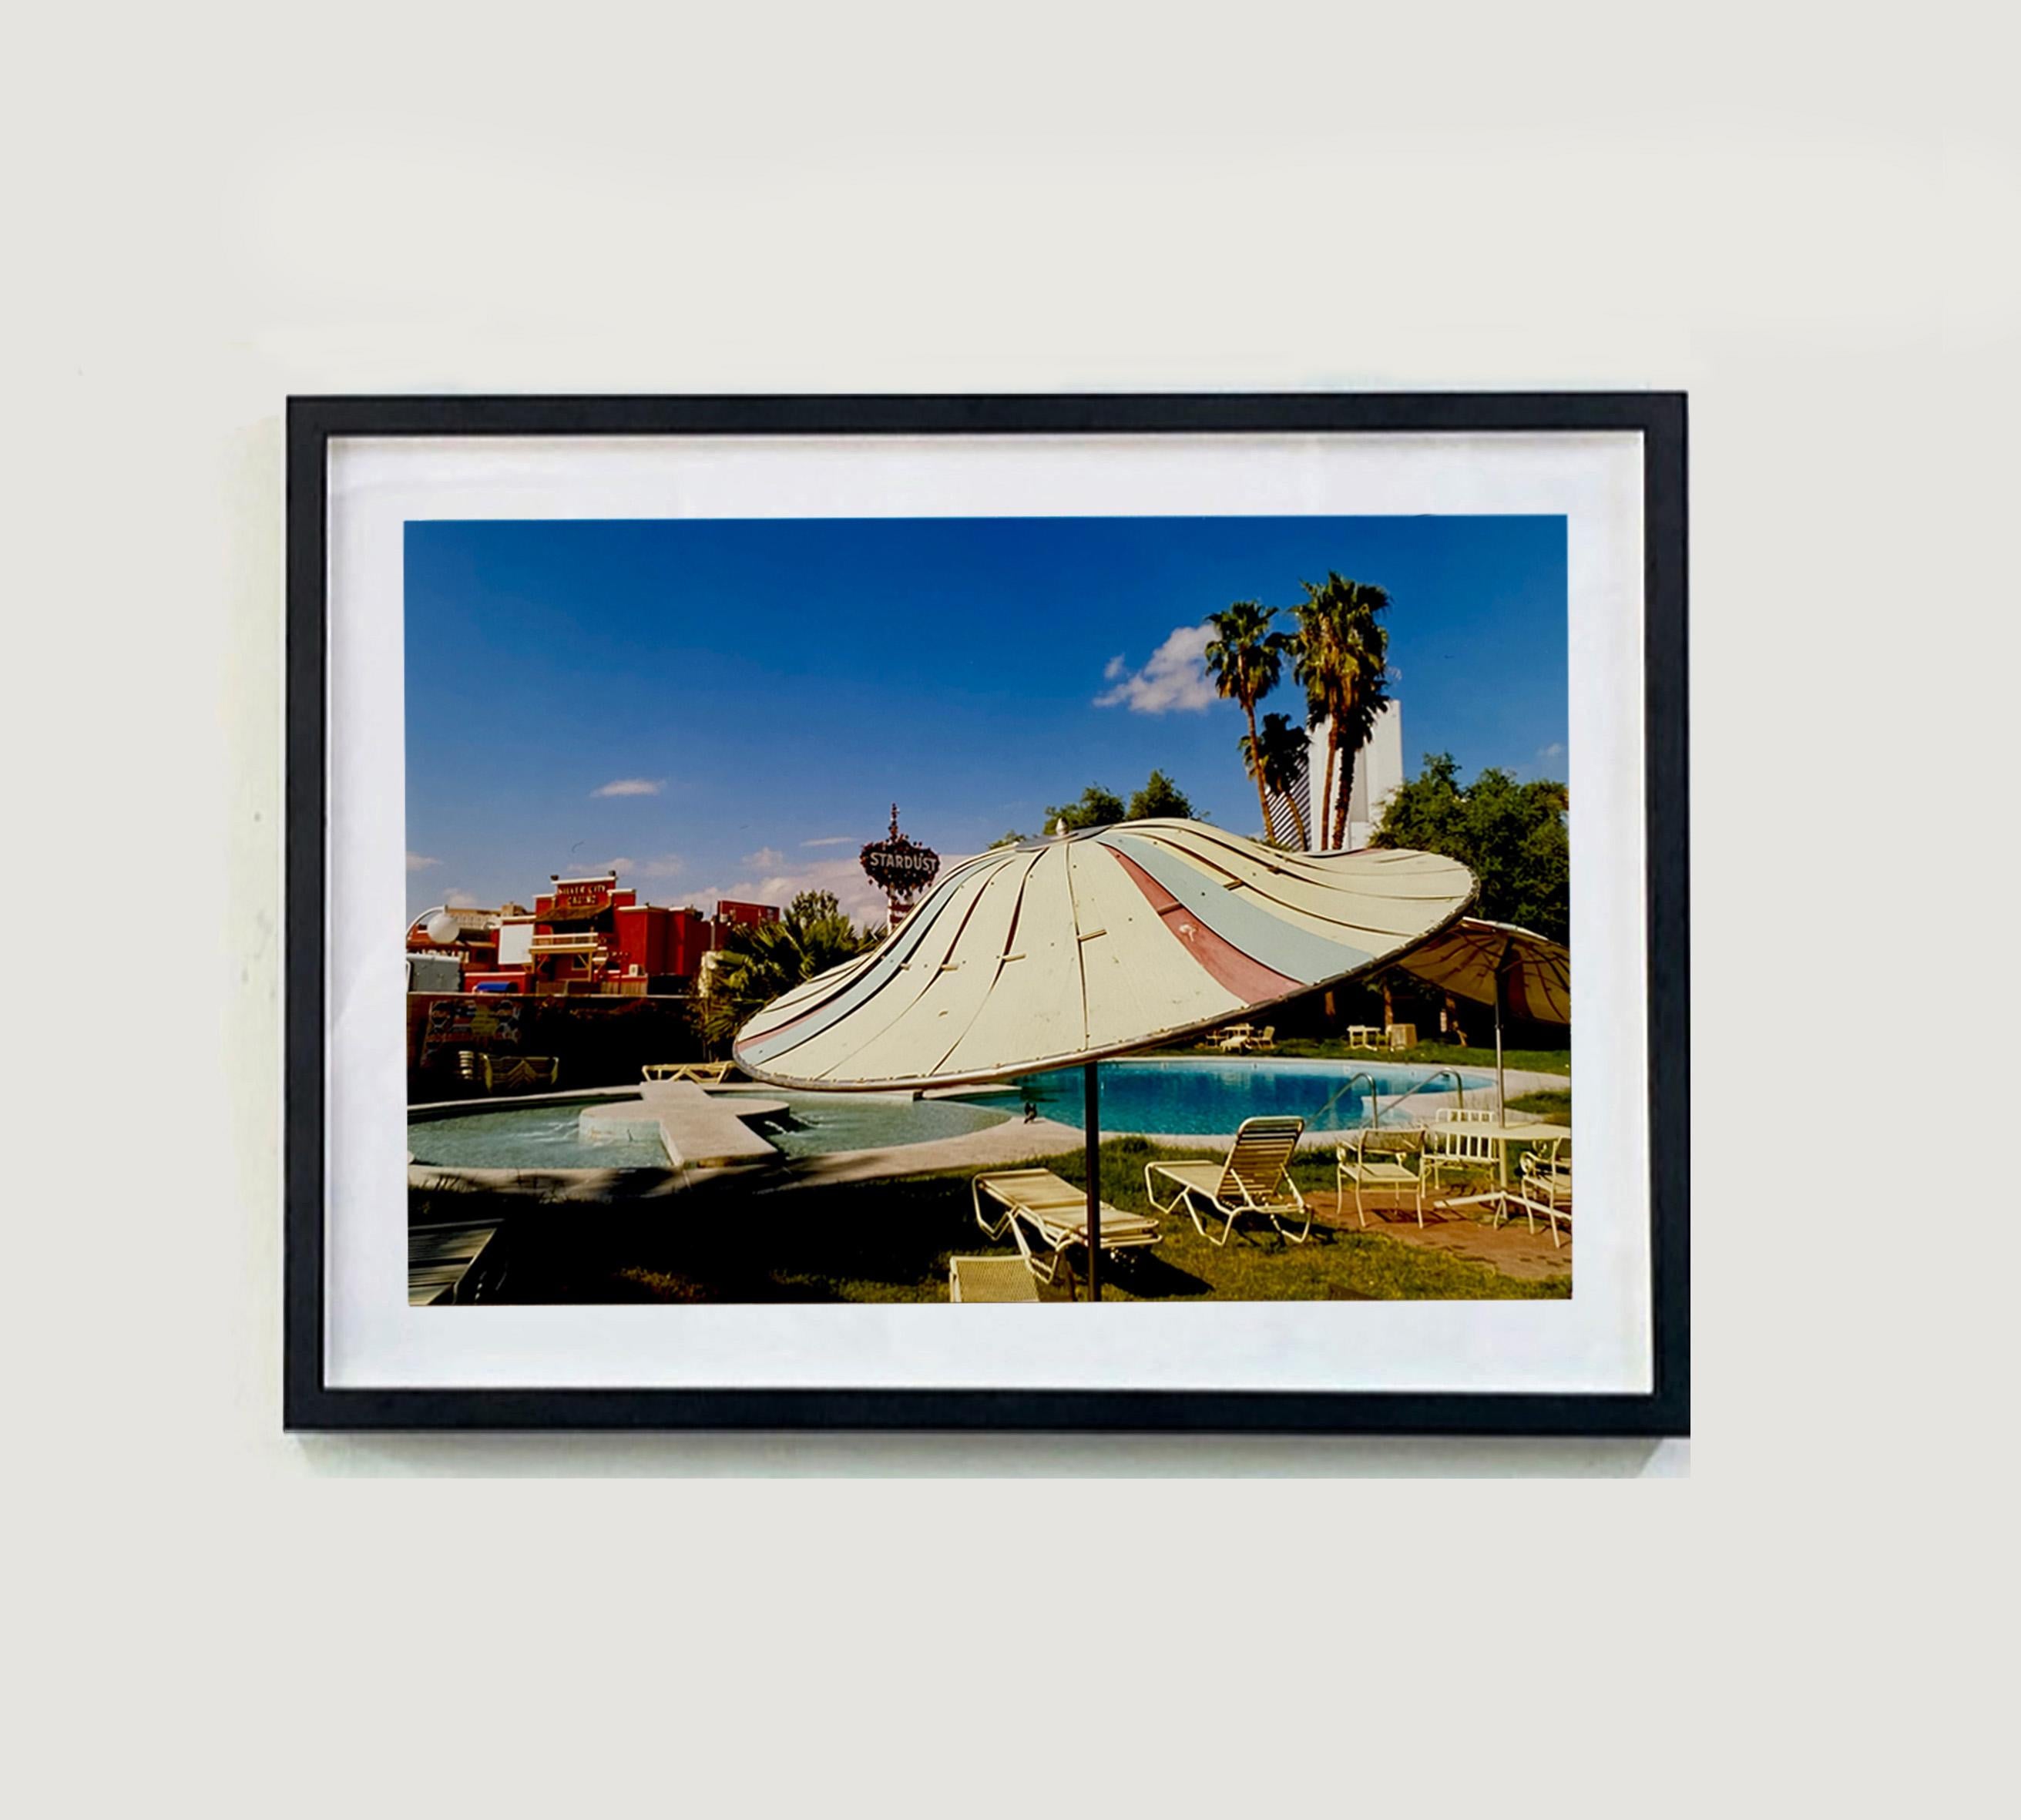 Poolside Parasol, El Morocco Motel, Las Vegas - American Color Photography - Print by Richard Heeps